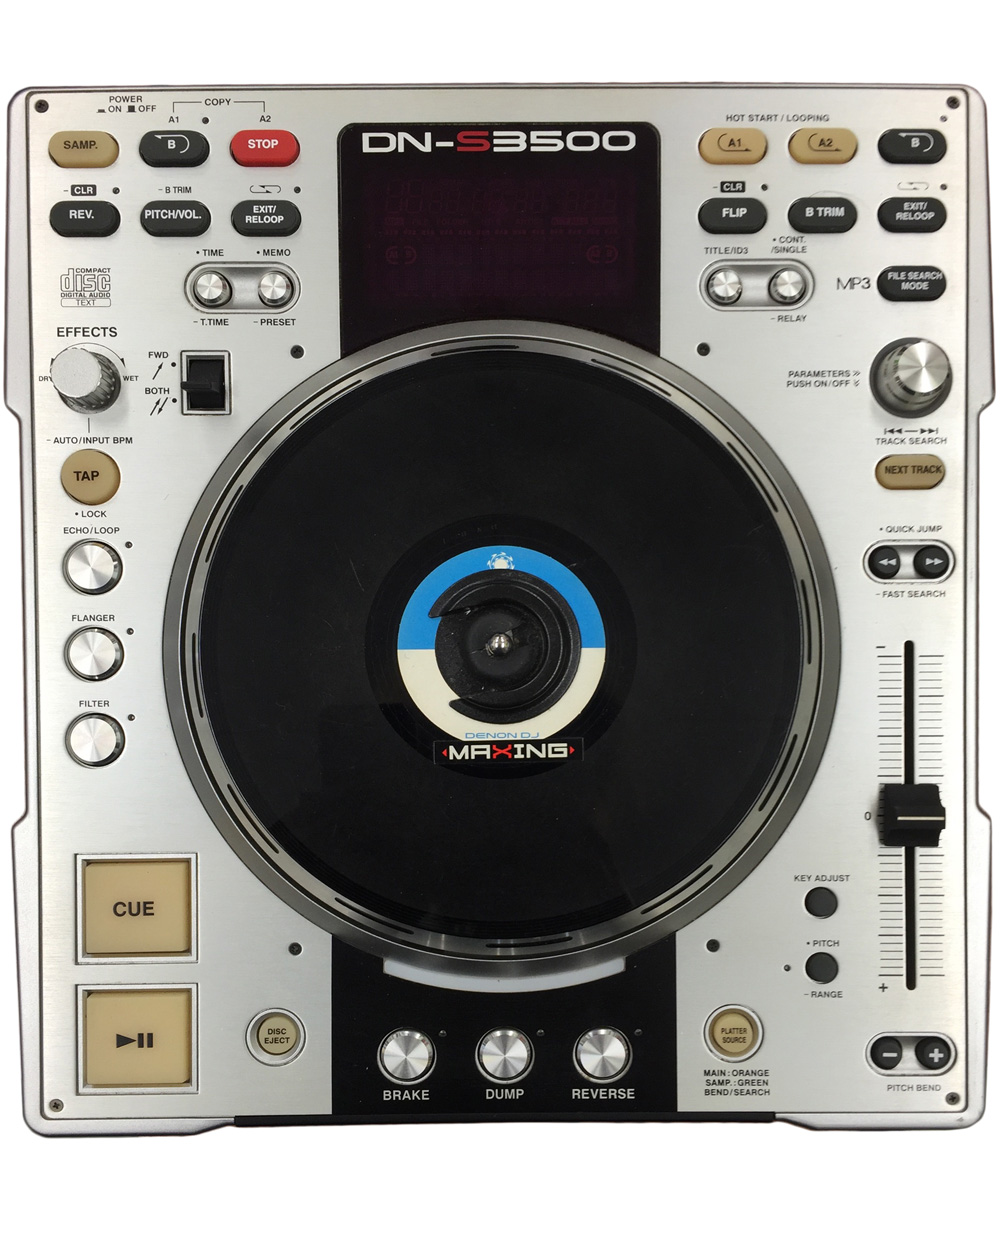 中古品】DENON/CDJ/DN-S3500 -DJ機材アナログレコード専門店OTAIRECORD